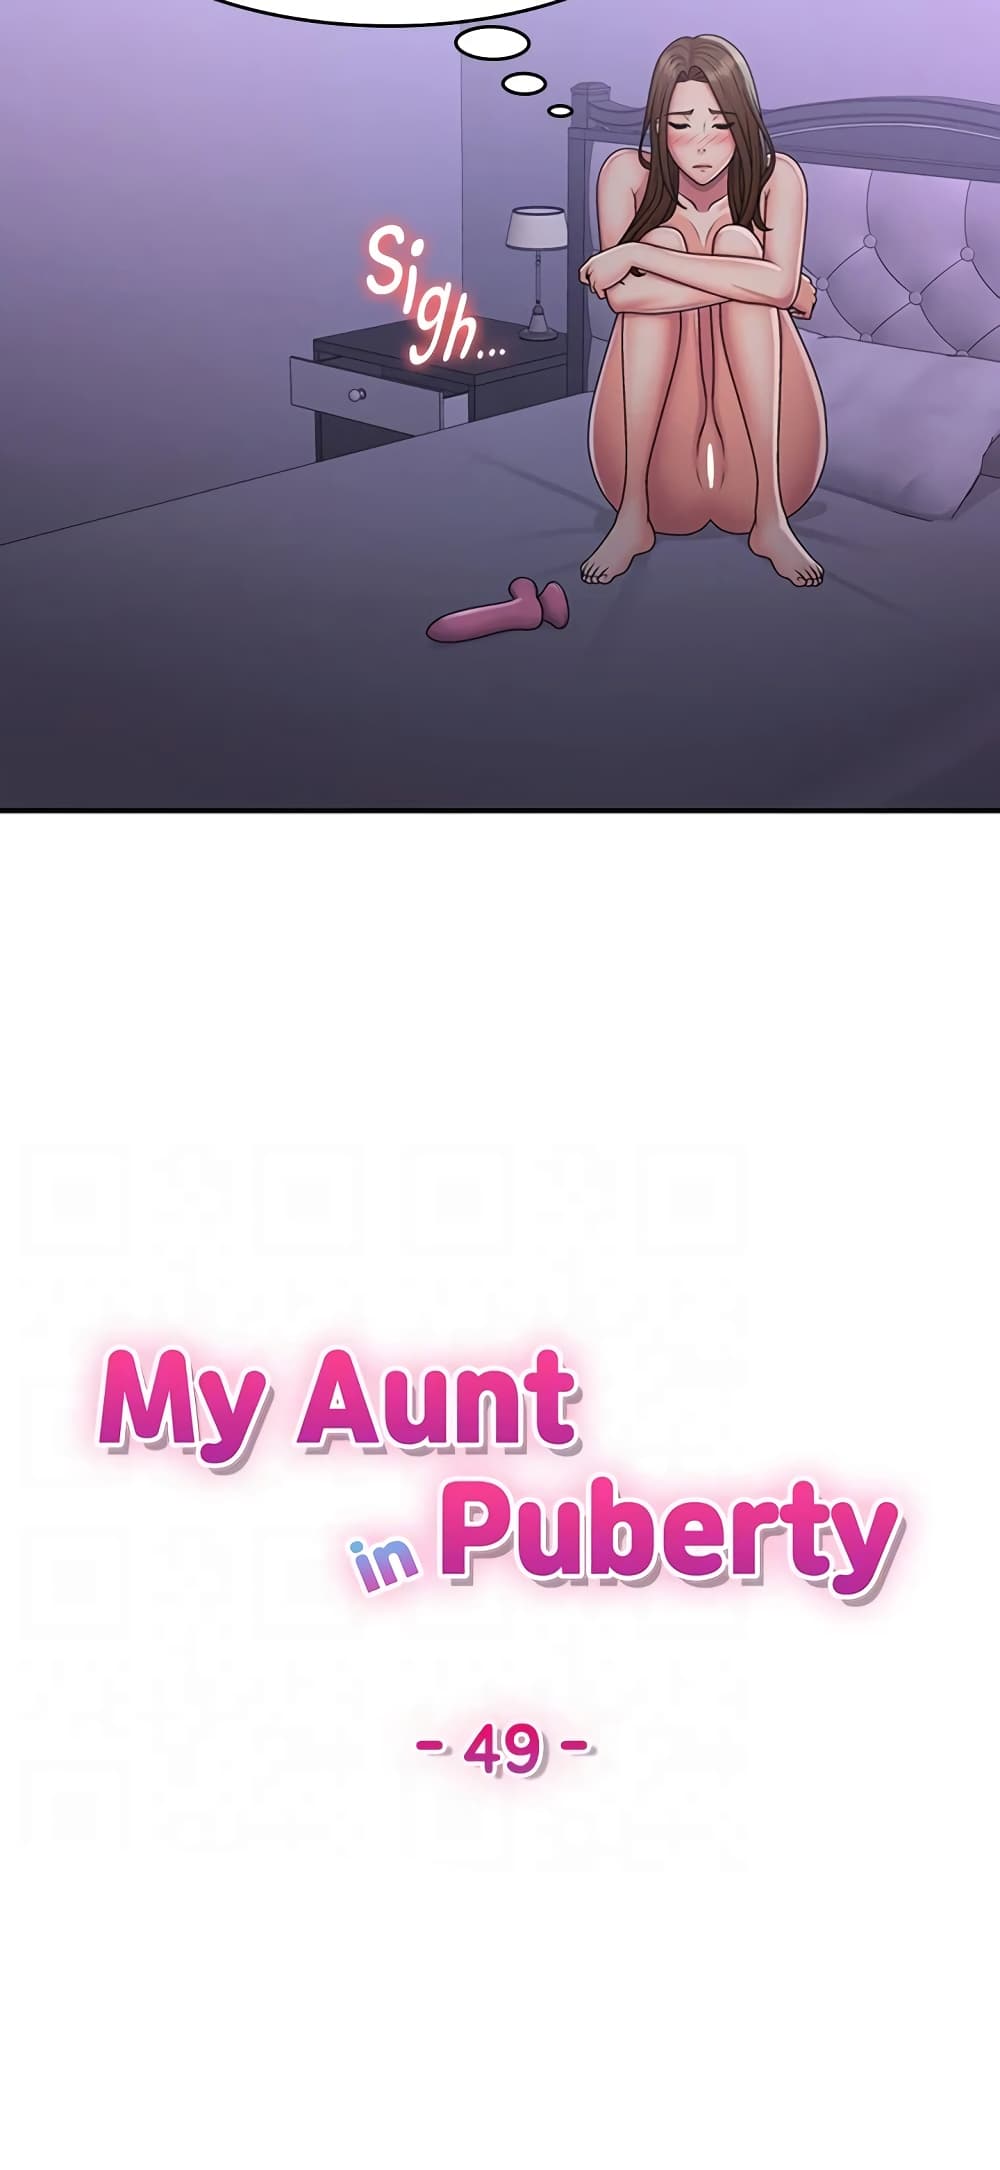 Aunt Puberty 49-49